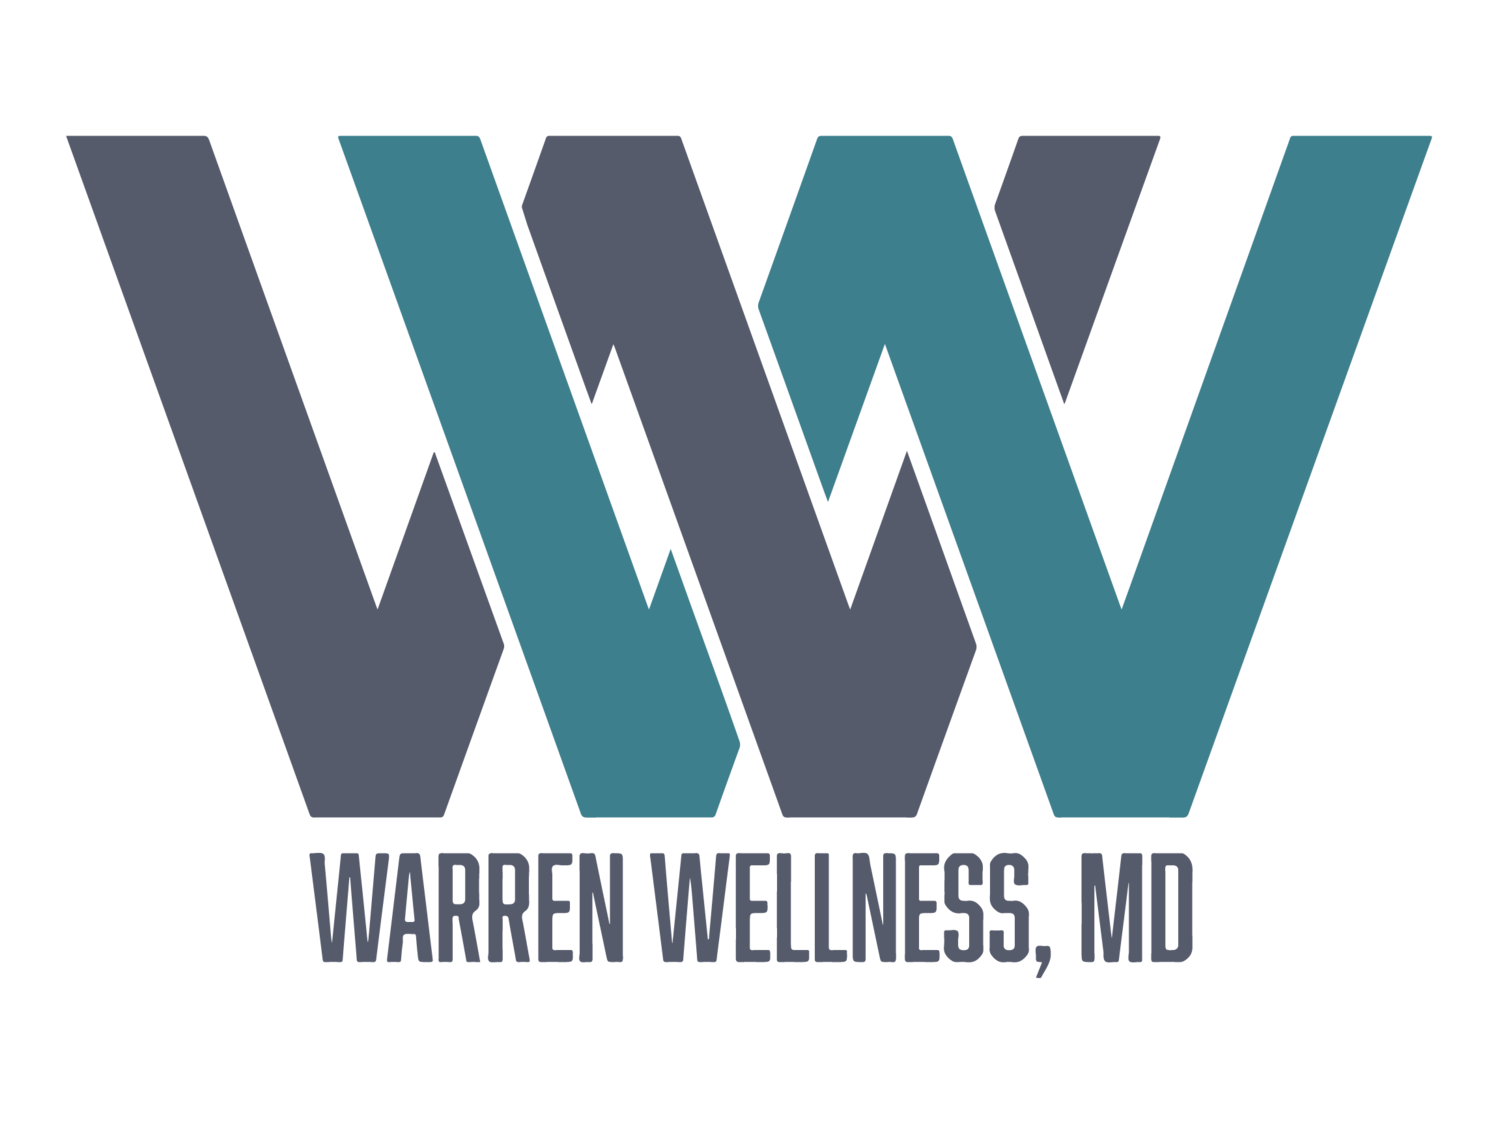 Warren Wellness, MD